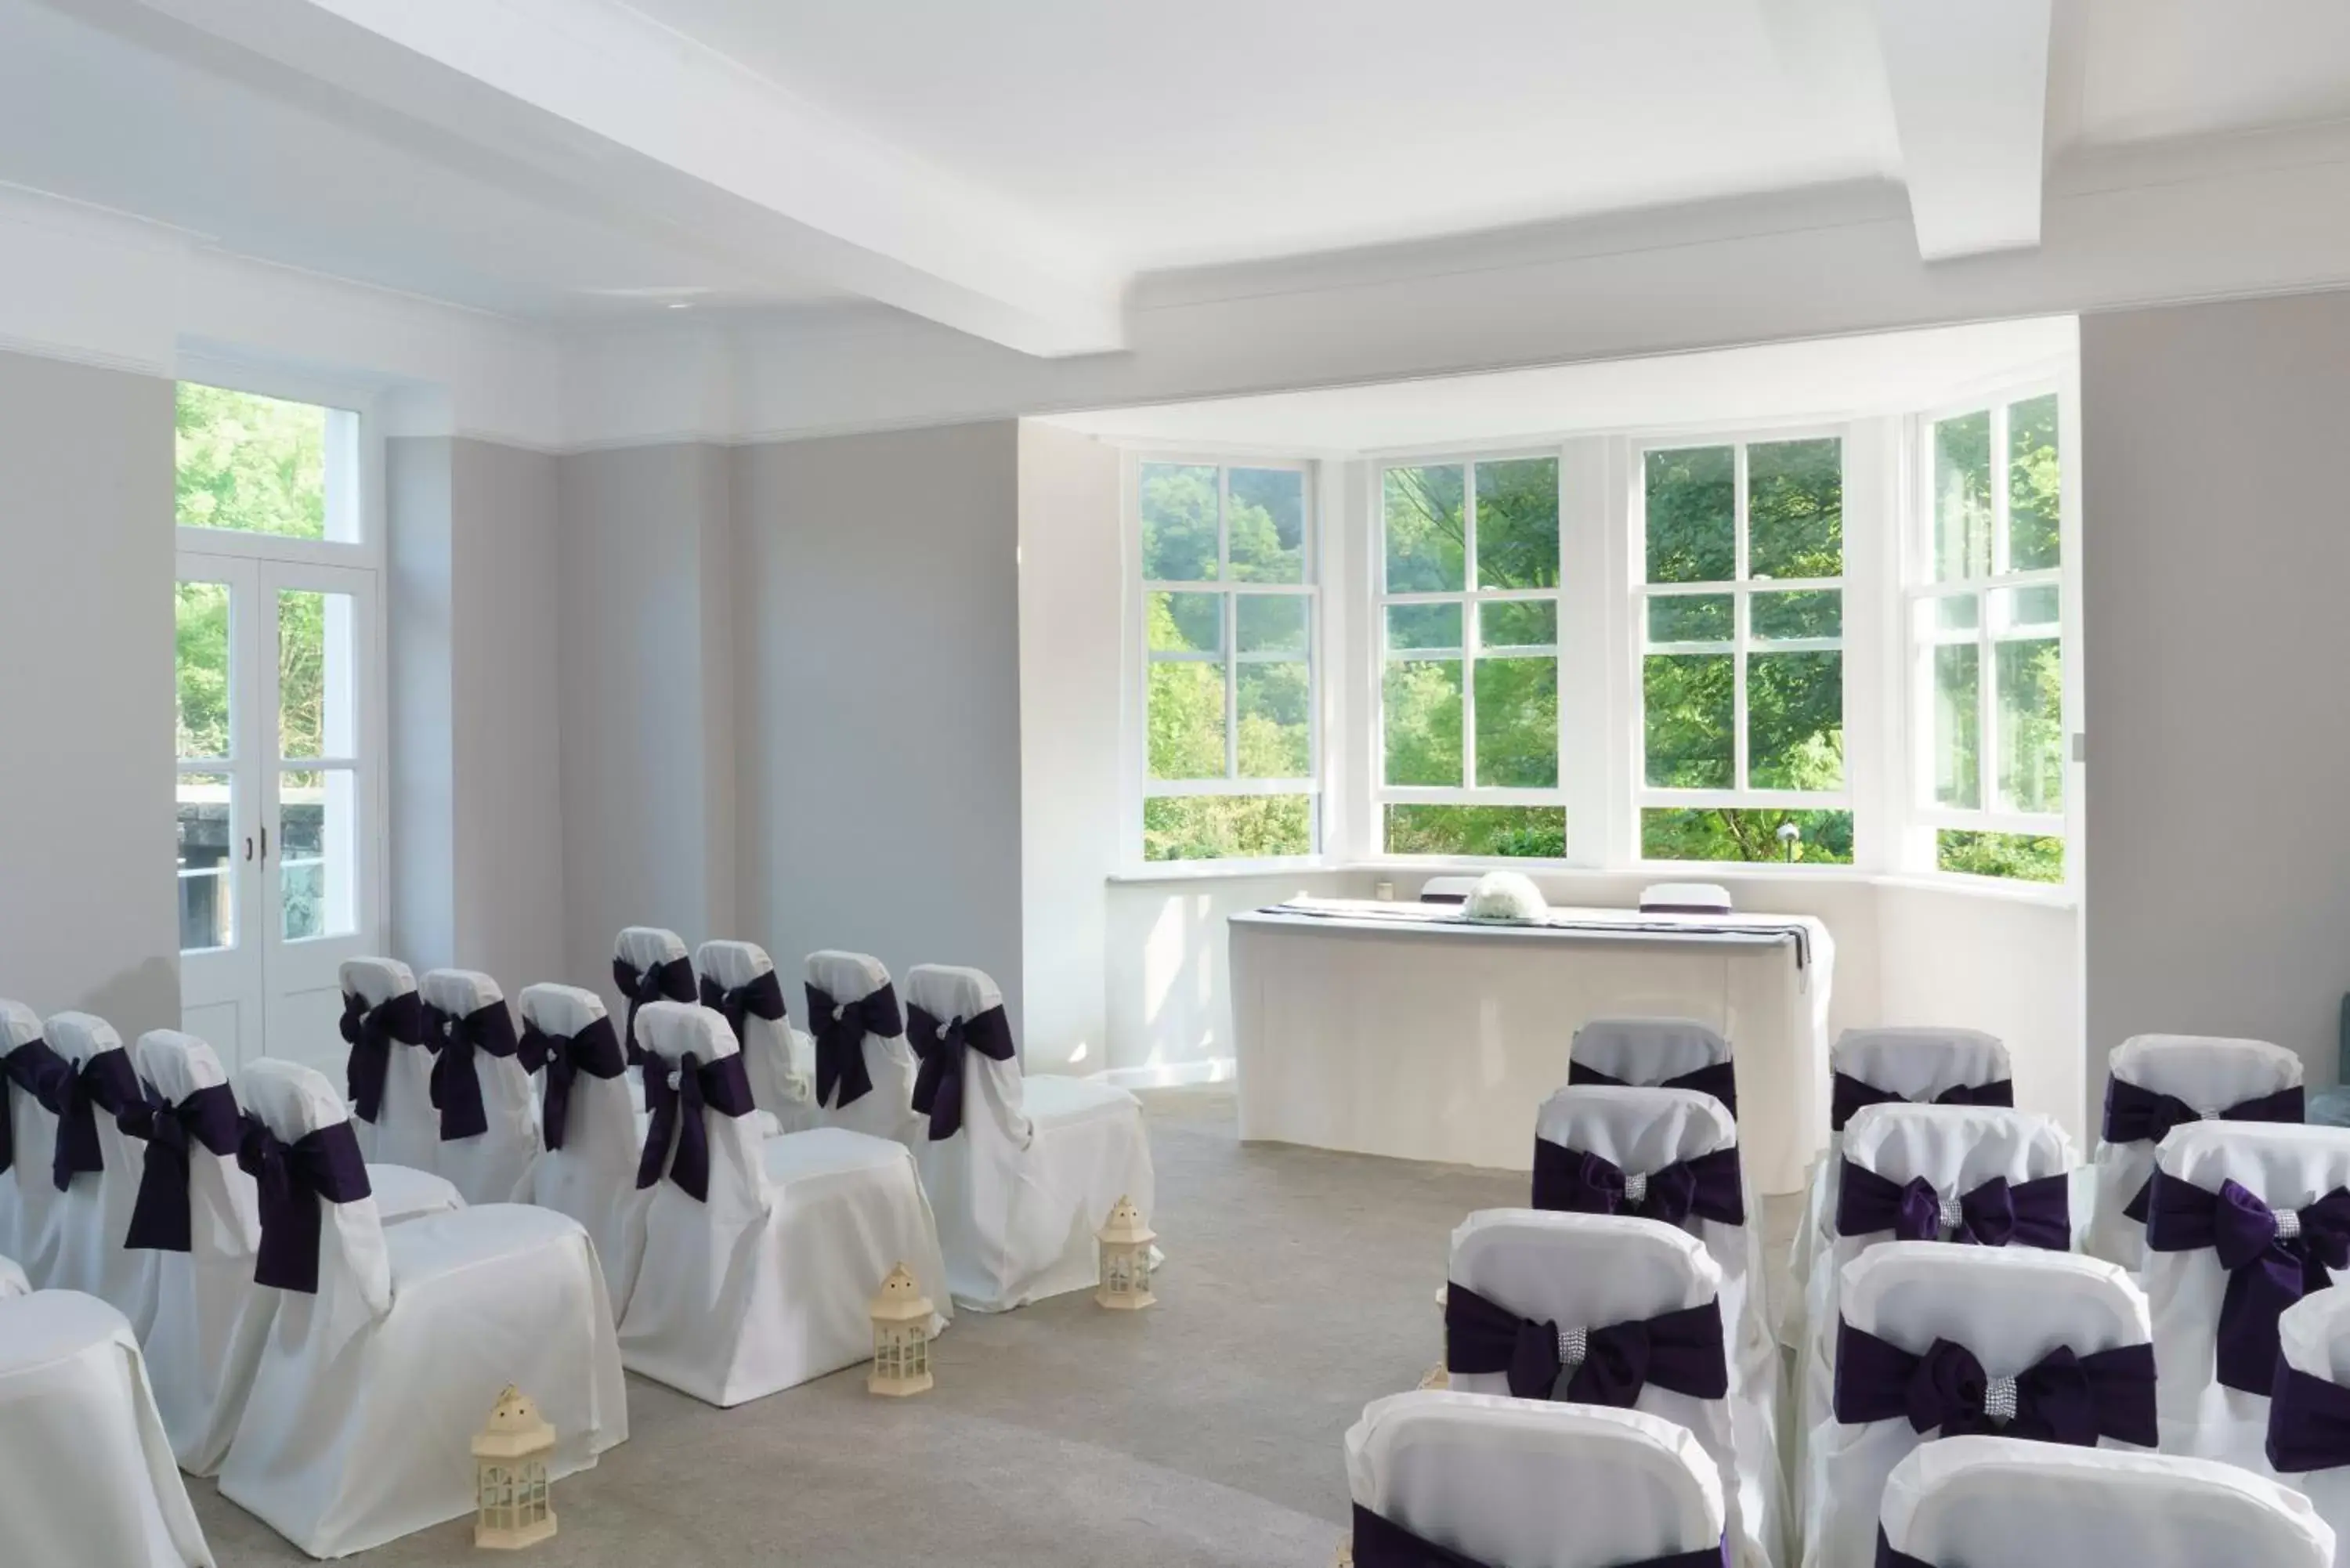 Banquet/Function facilities, Banquet Facilities in New Bath Hotel & Spa